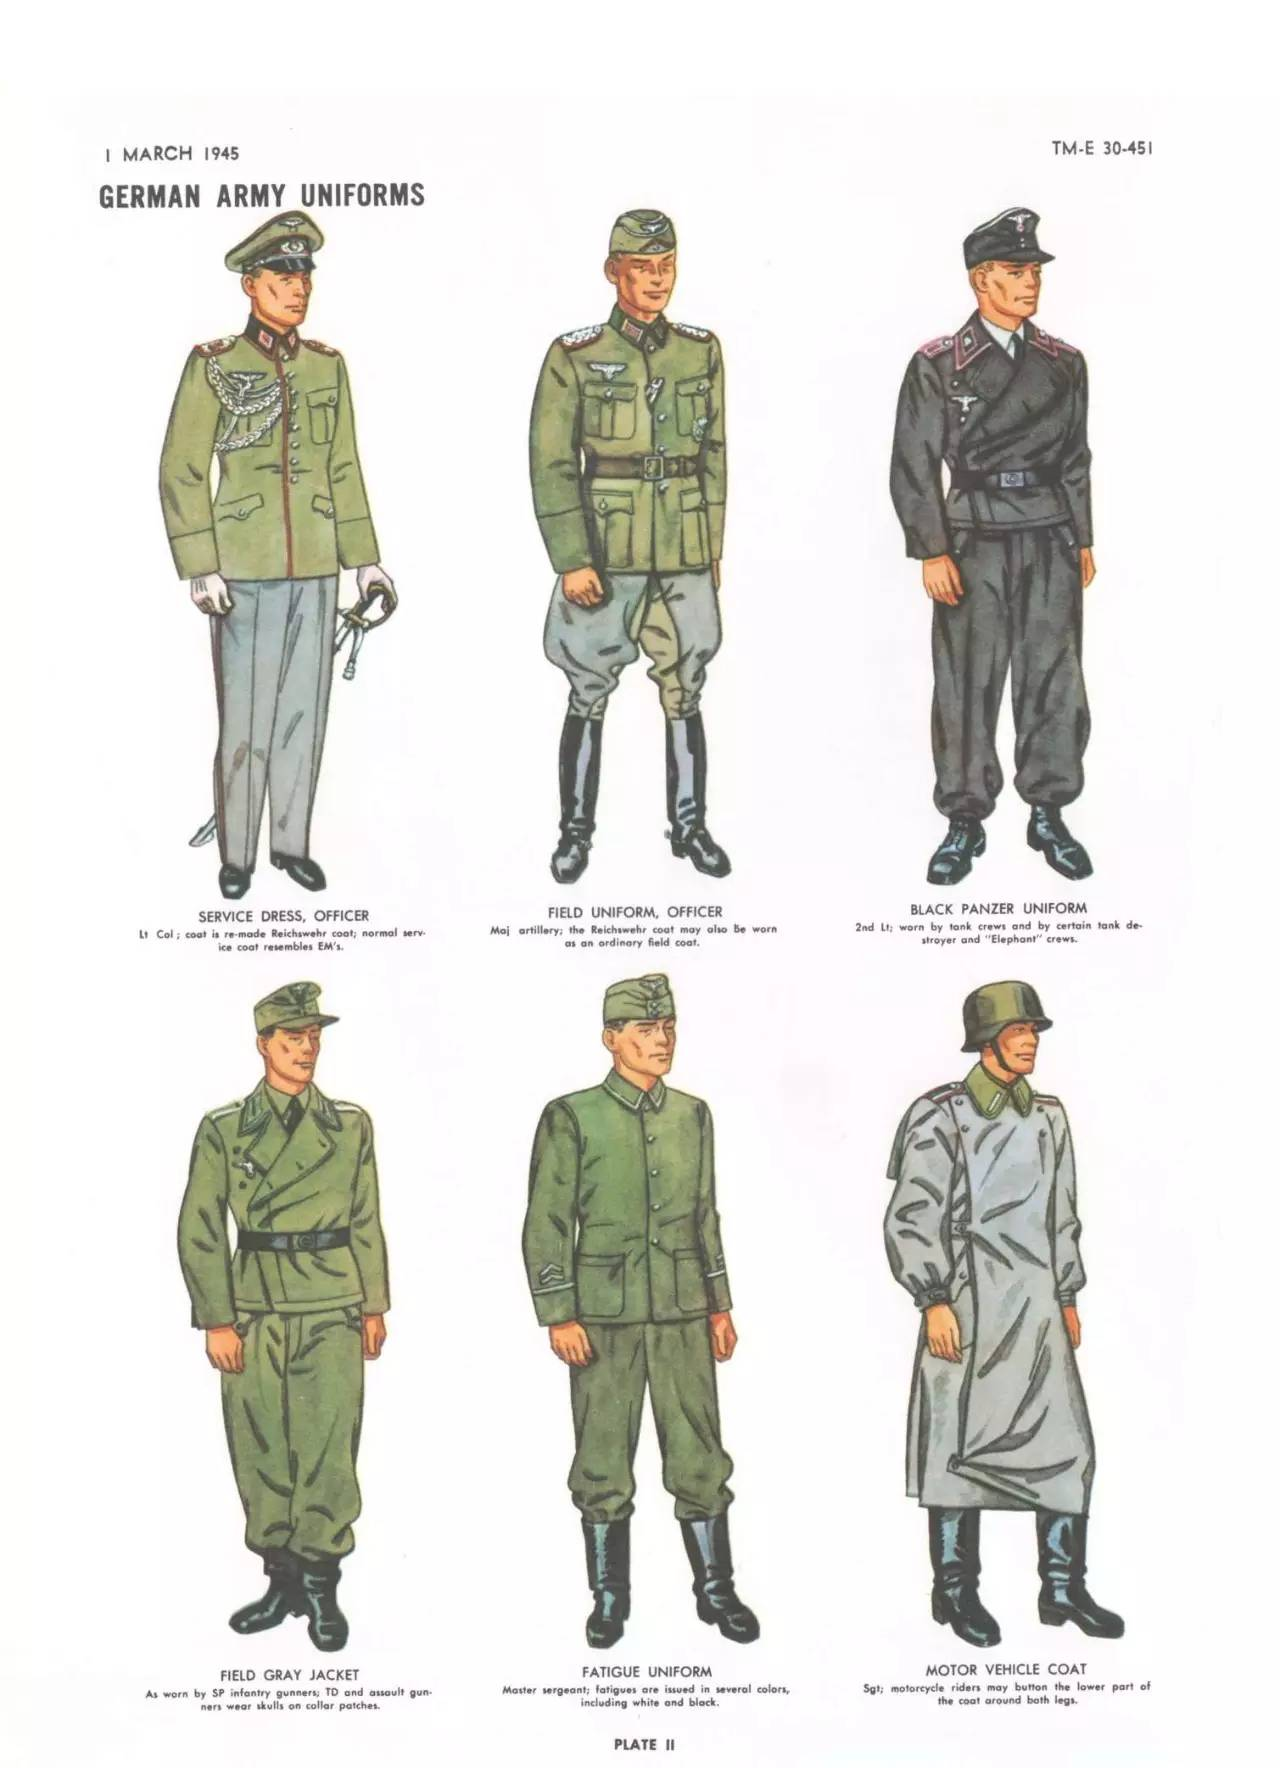 为什么有人喜欢二战时期纳粹德国的军服? 